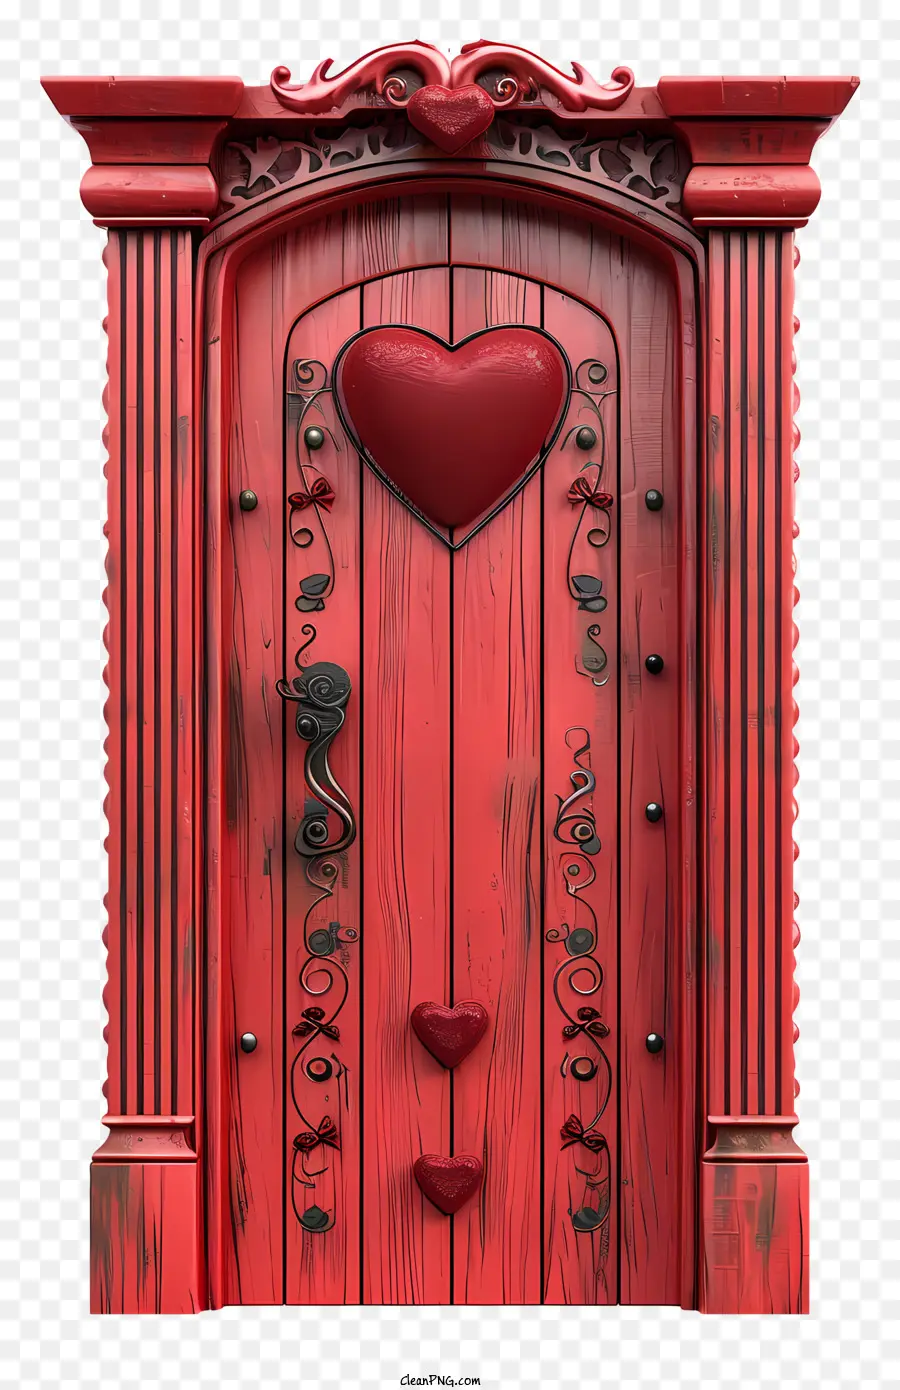 trái tim - Cửa gỗ với trái tim màu đỏ, chạm khắc, mở